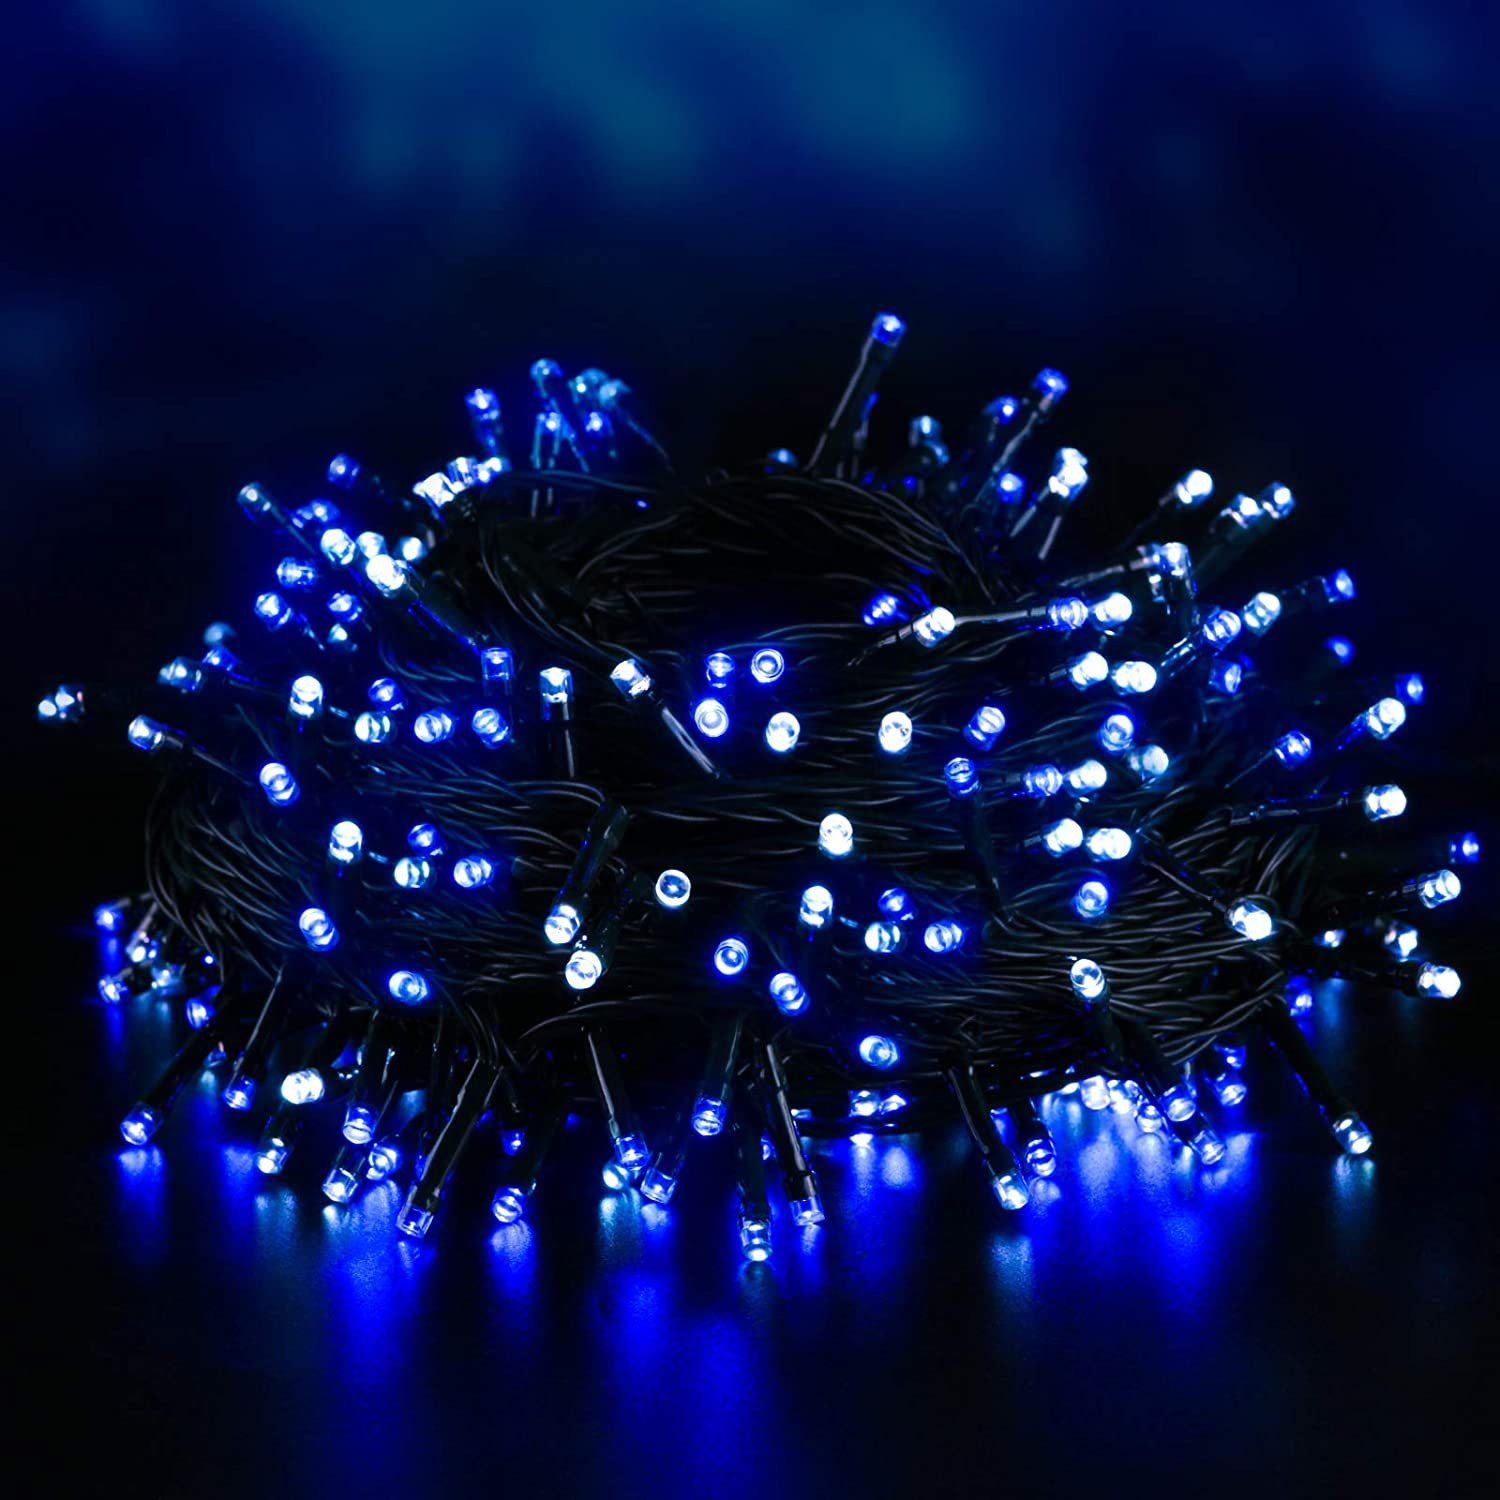 Elegear LED-Lichterkette, LED Lichterkette Batterie 40M 300 LEDs,  Lichterkette Außen Timer Memoryfunktion 8 Modi IP44 Wasserdicht Lichterkette  für Innen und Außen, Weihnachtsbeleuchtung für Weihnachtsdeko,  Weihnachtsbaum online kaufen | OTTO